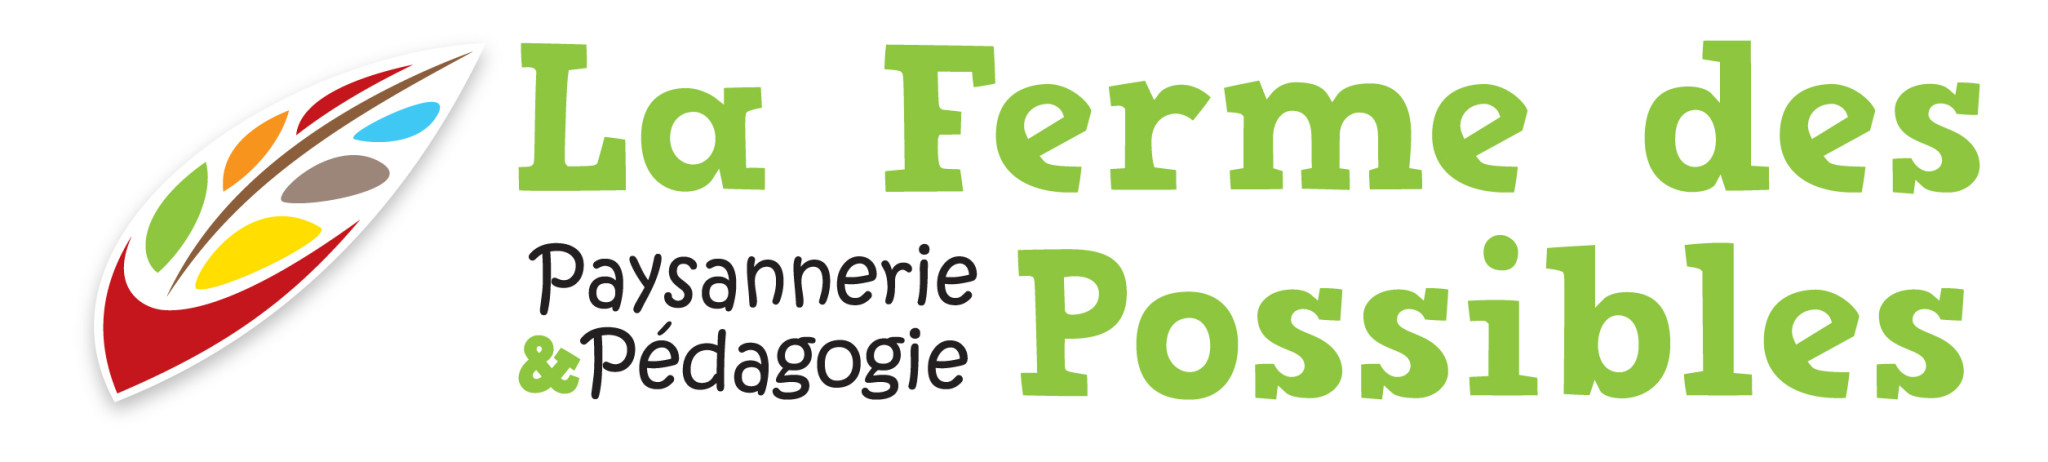 FERME-logo